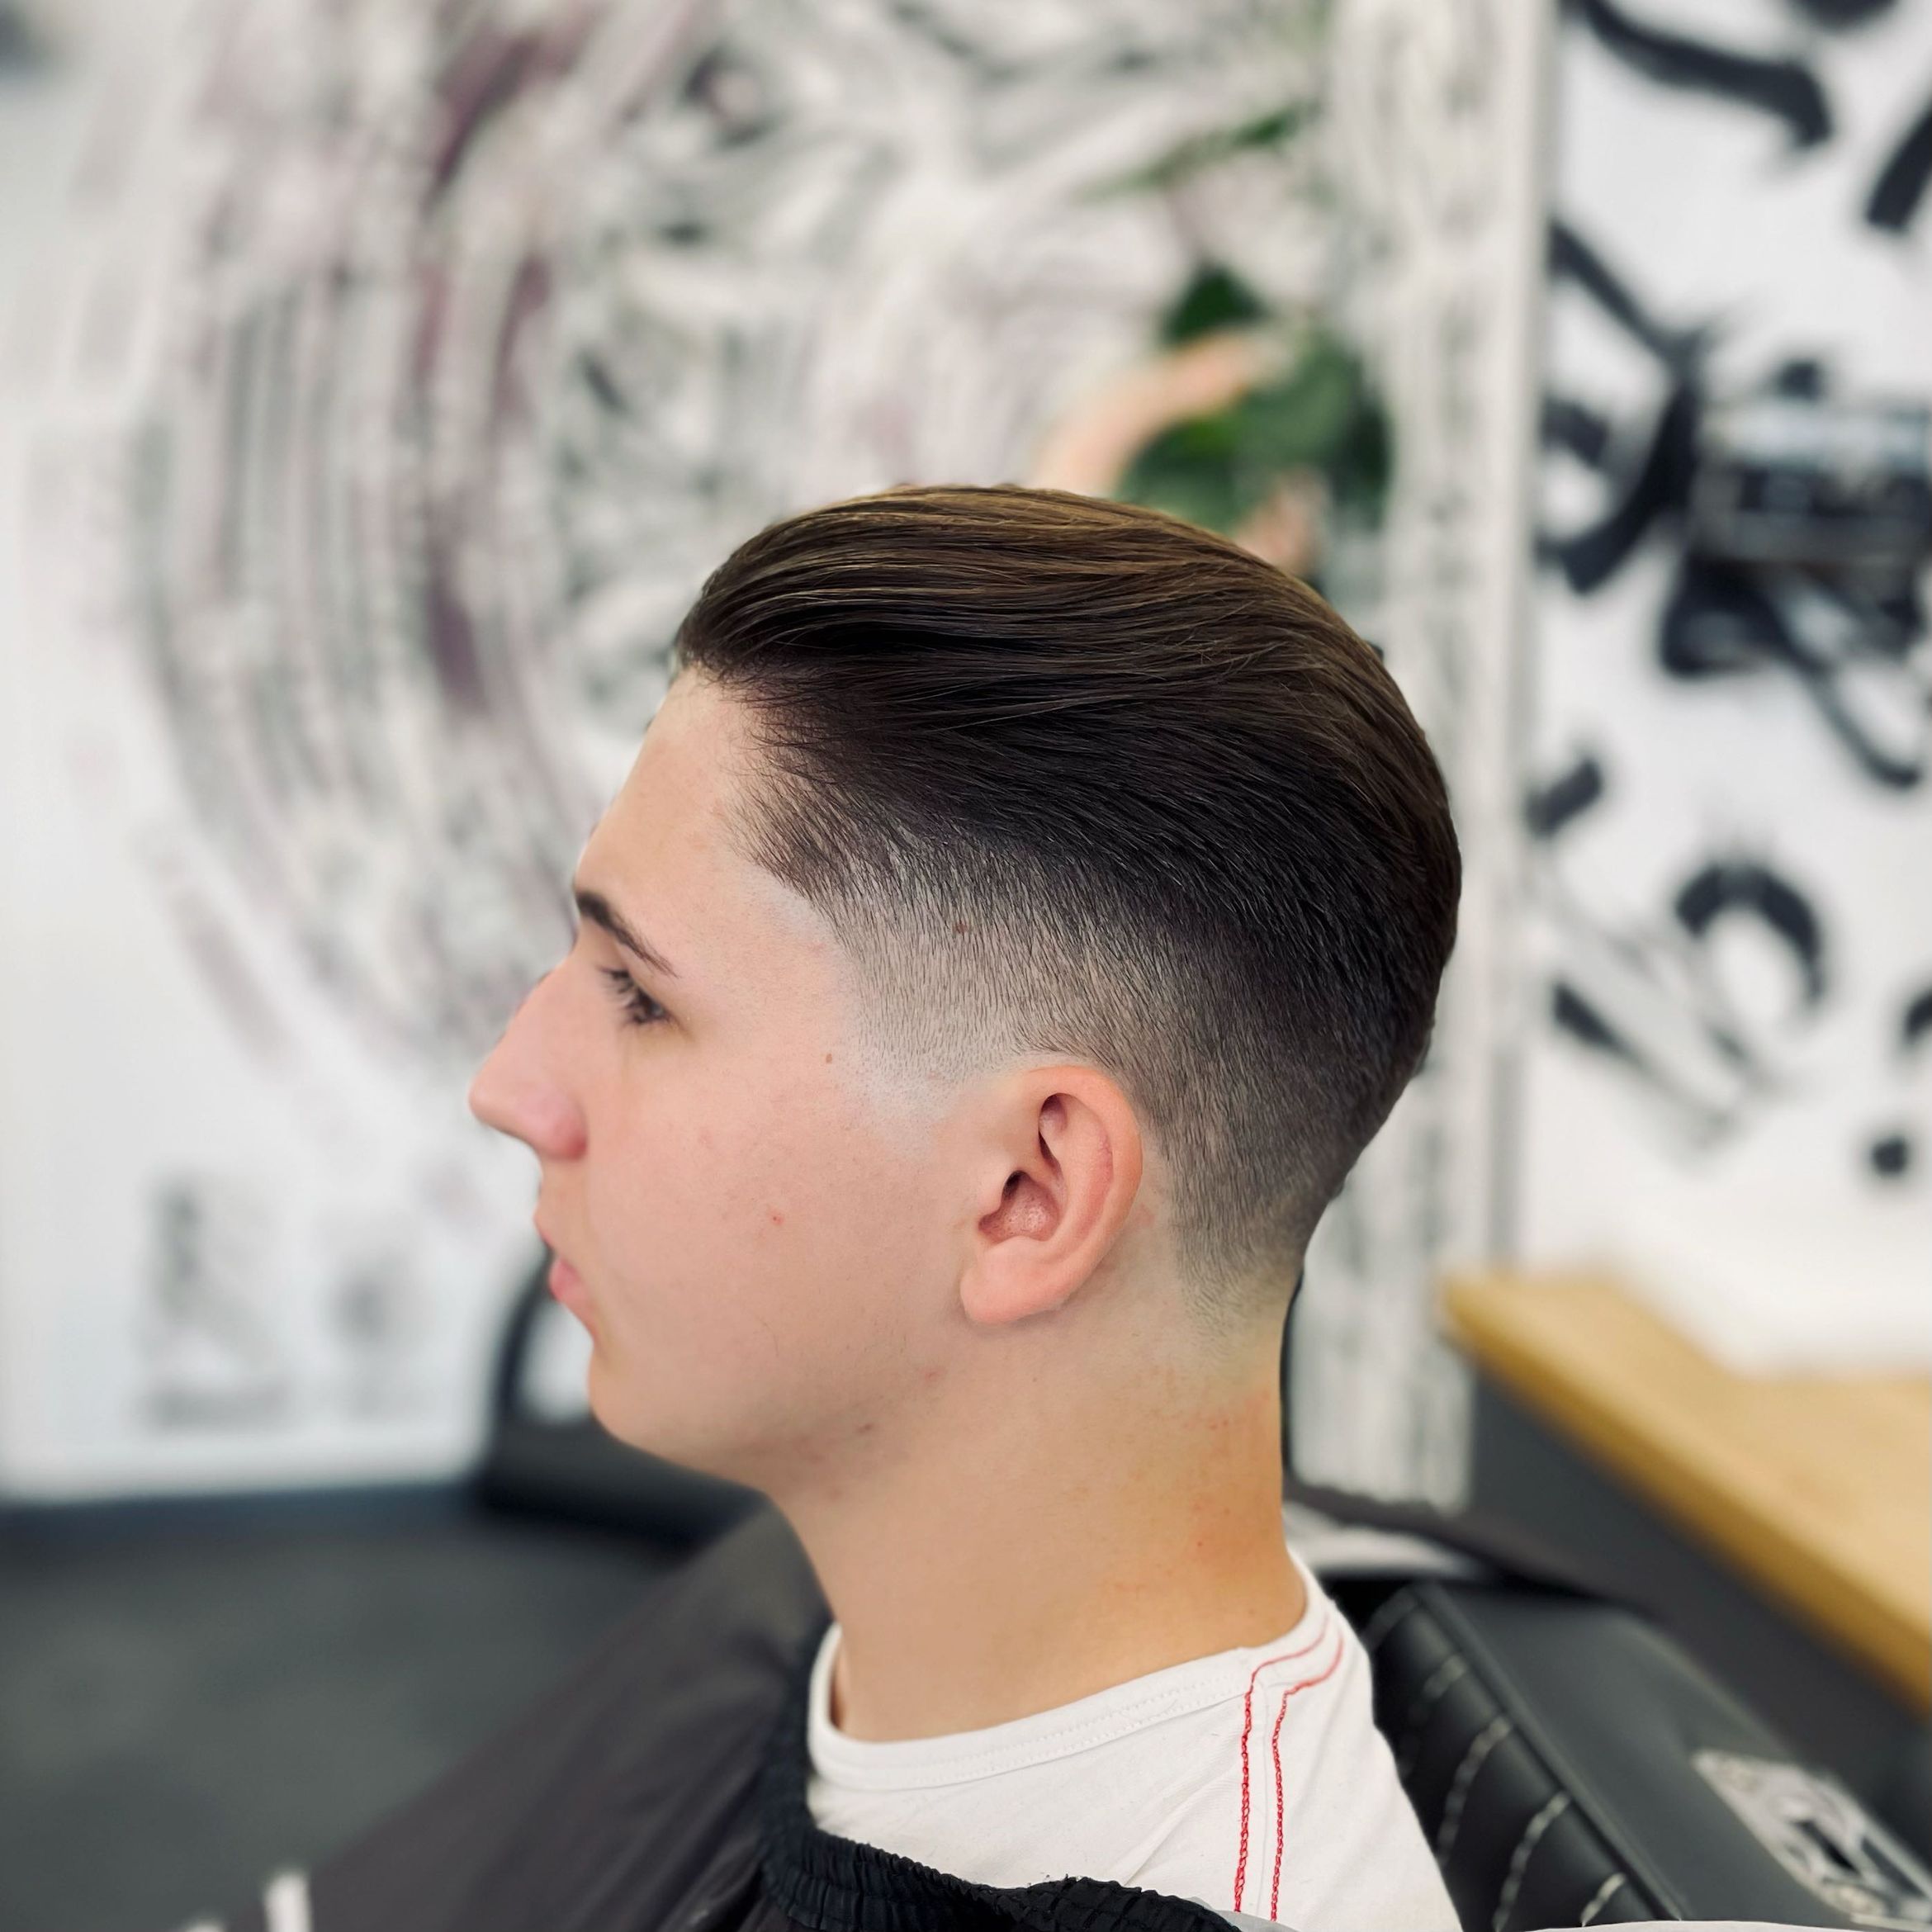 Portfolio usługi Strzyżenie włosów (studenckie) / Haircut (student)